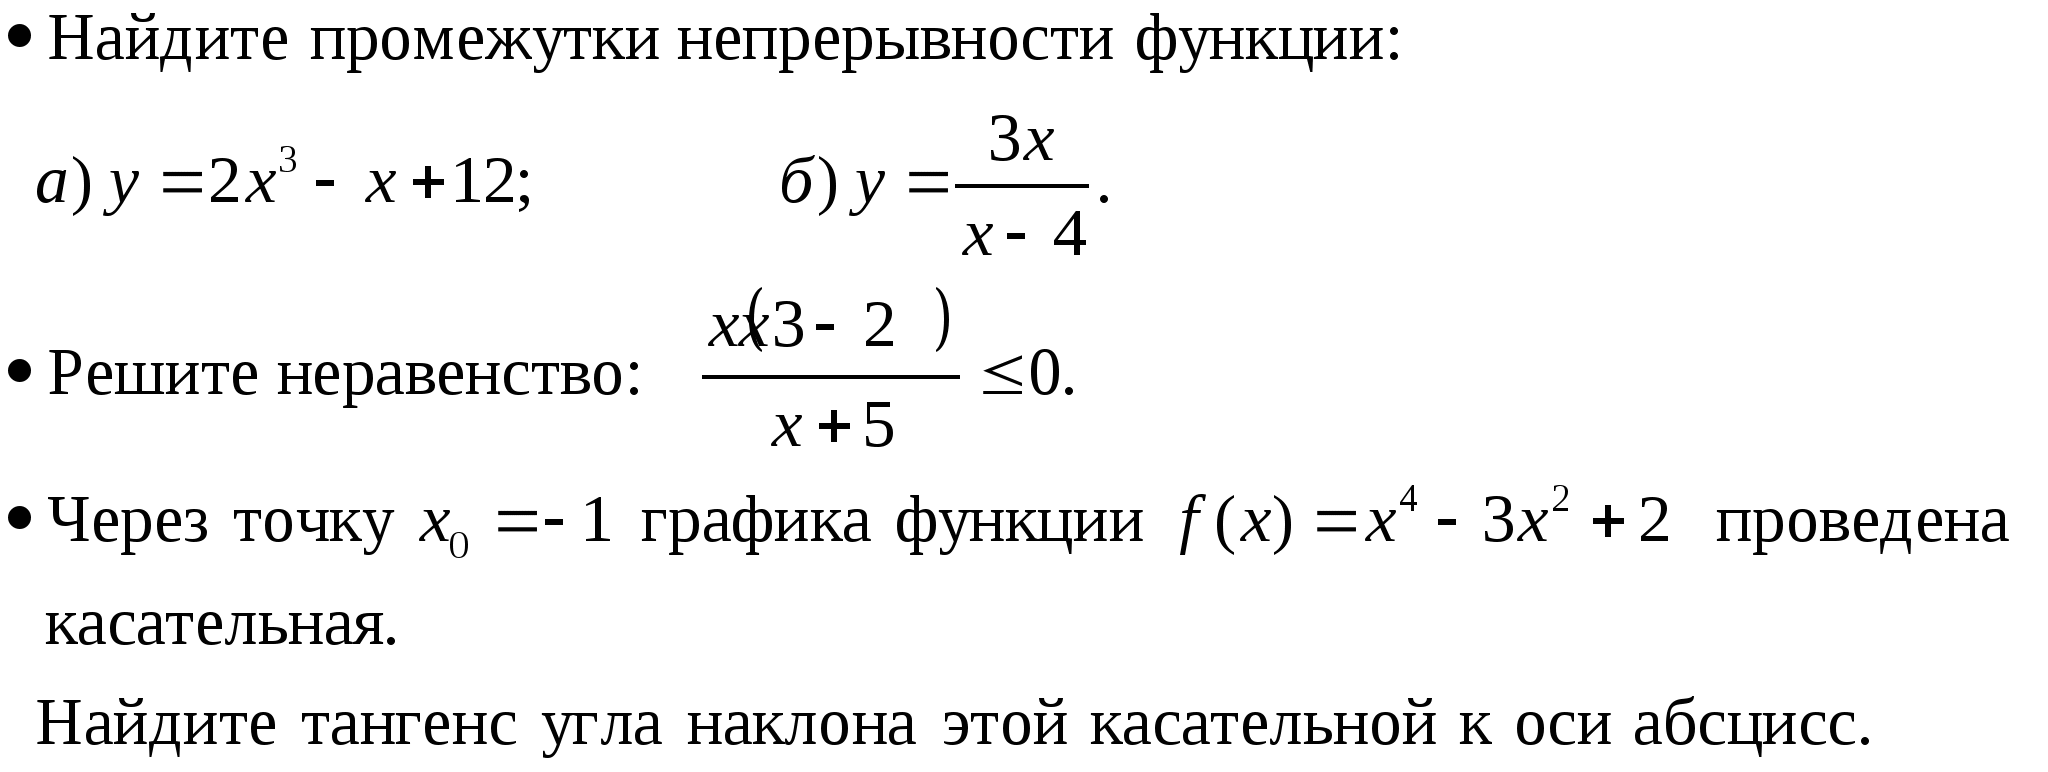 Рабочая программа по алгебре 10 класс, 2 часа, к учебнику Колмогорова А. Н.